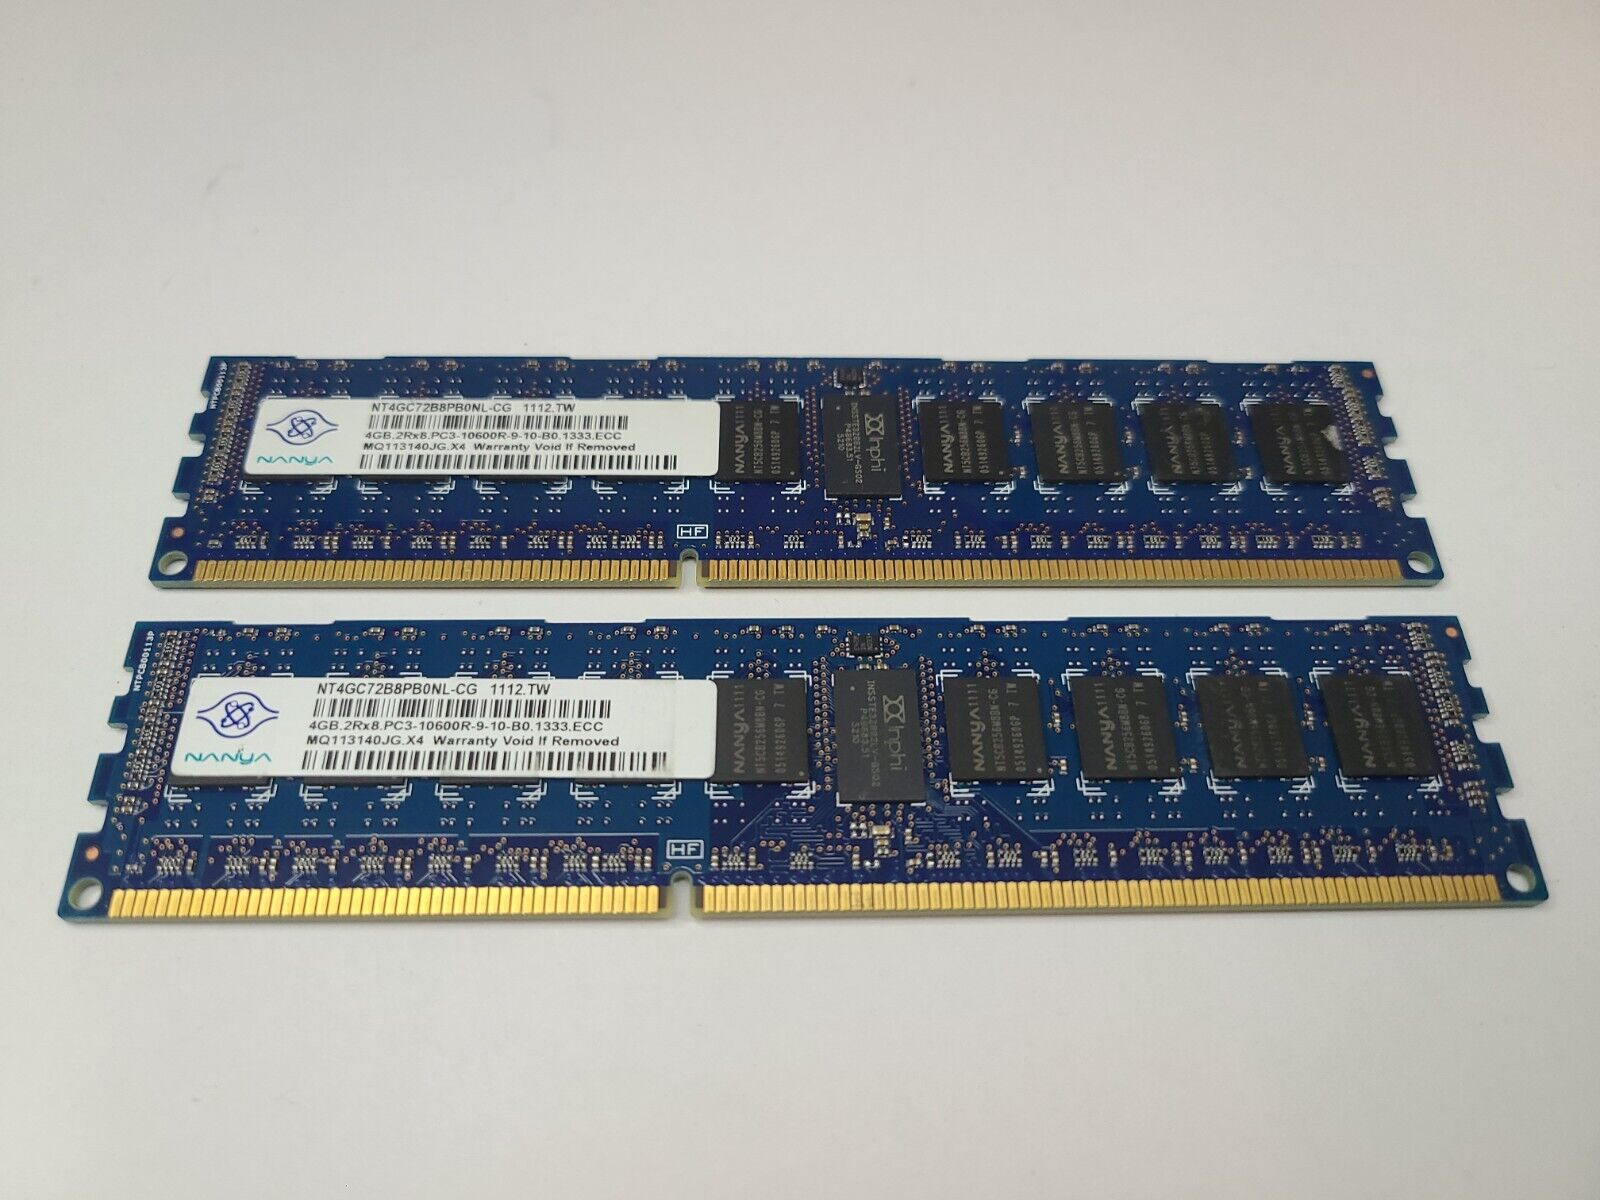 Nanya 8GB (2x4GB) DDR3 1333MHz PC3-10600R ECC Server Ram | NT4GC72B8PB0NL-CG |